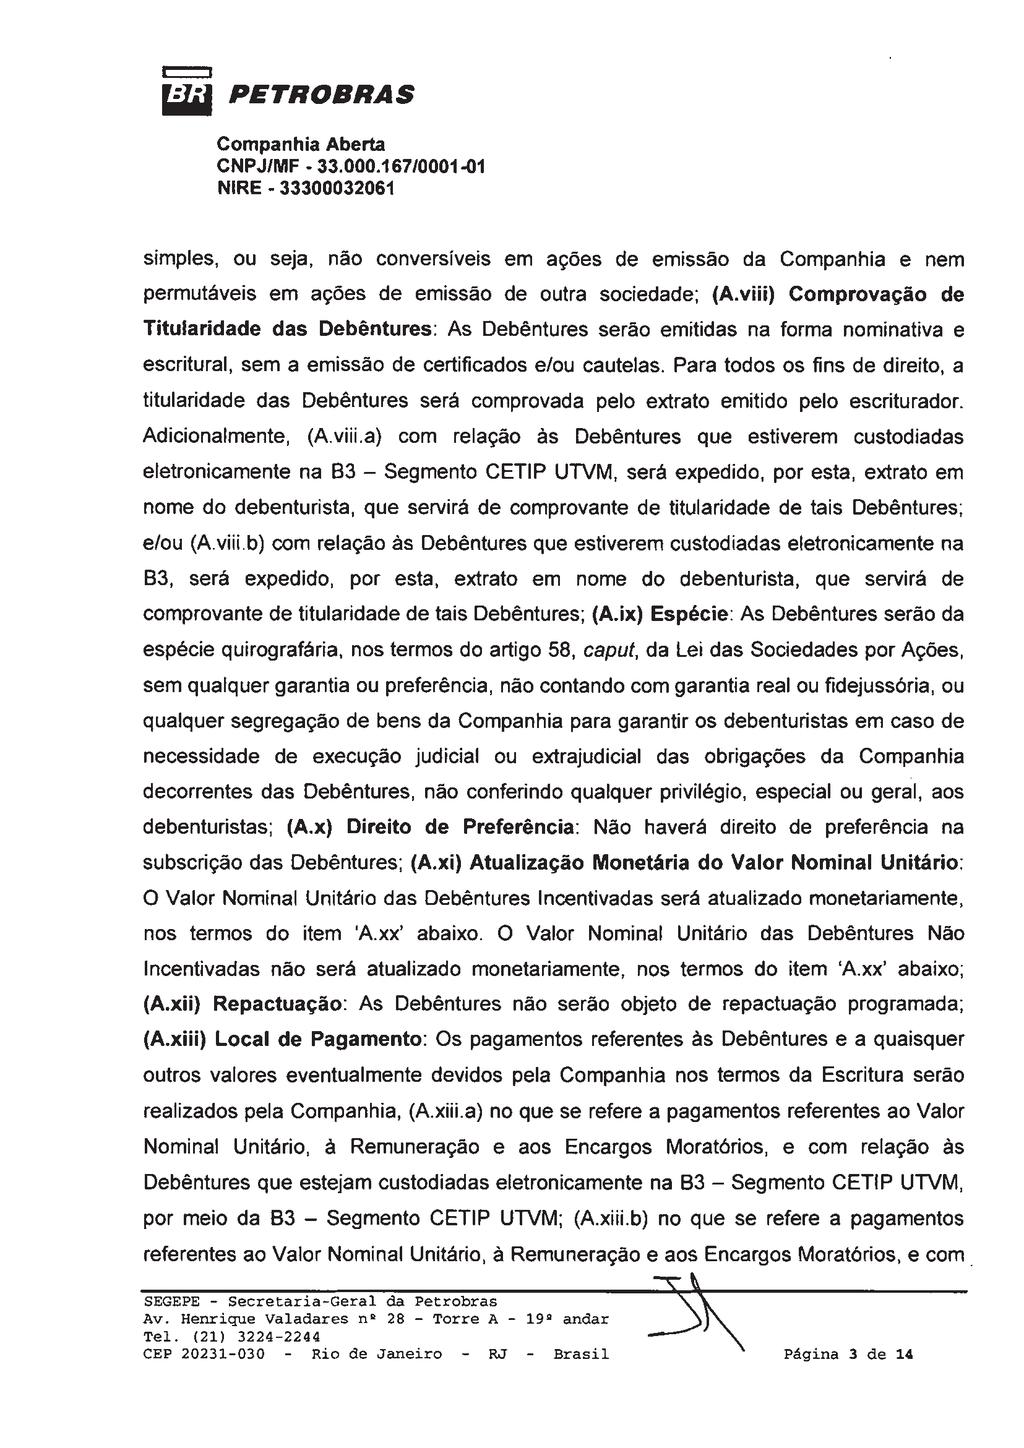 Junta Comercial do Estado do Rio de Janeiro Empresa: PETROLEO BRASILEIRO S/A PETROBRAS NIRE: 333.